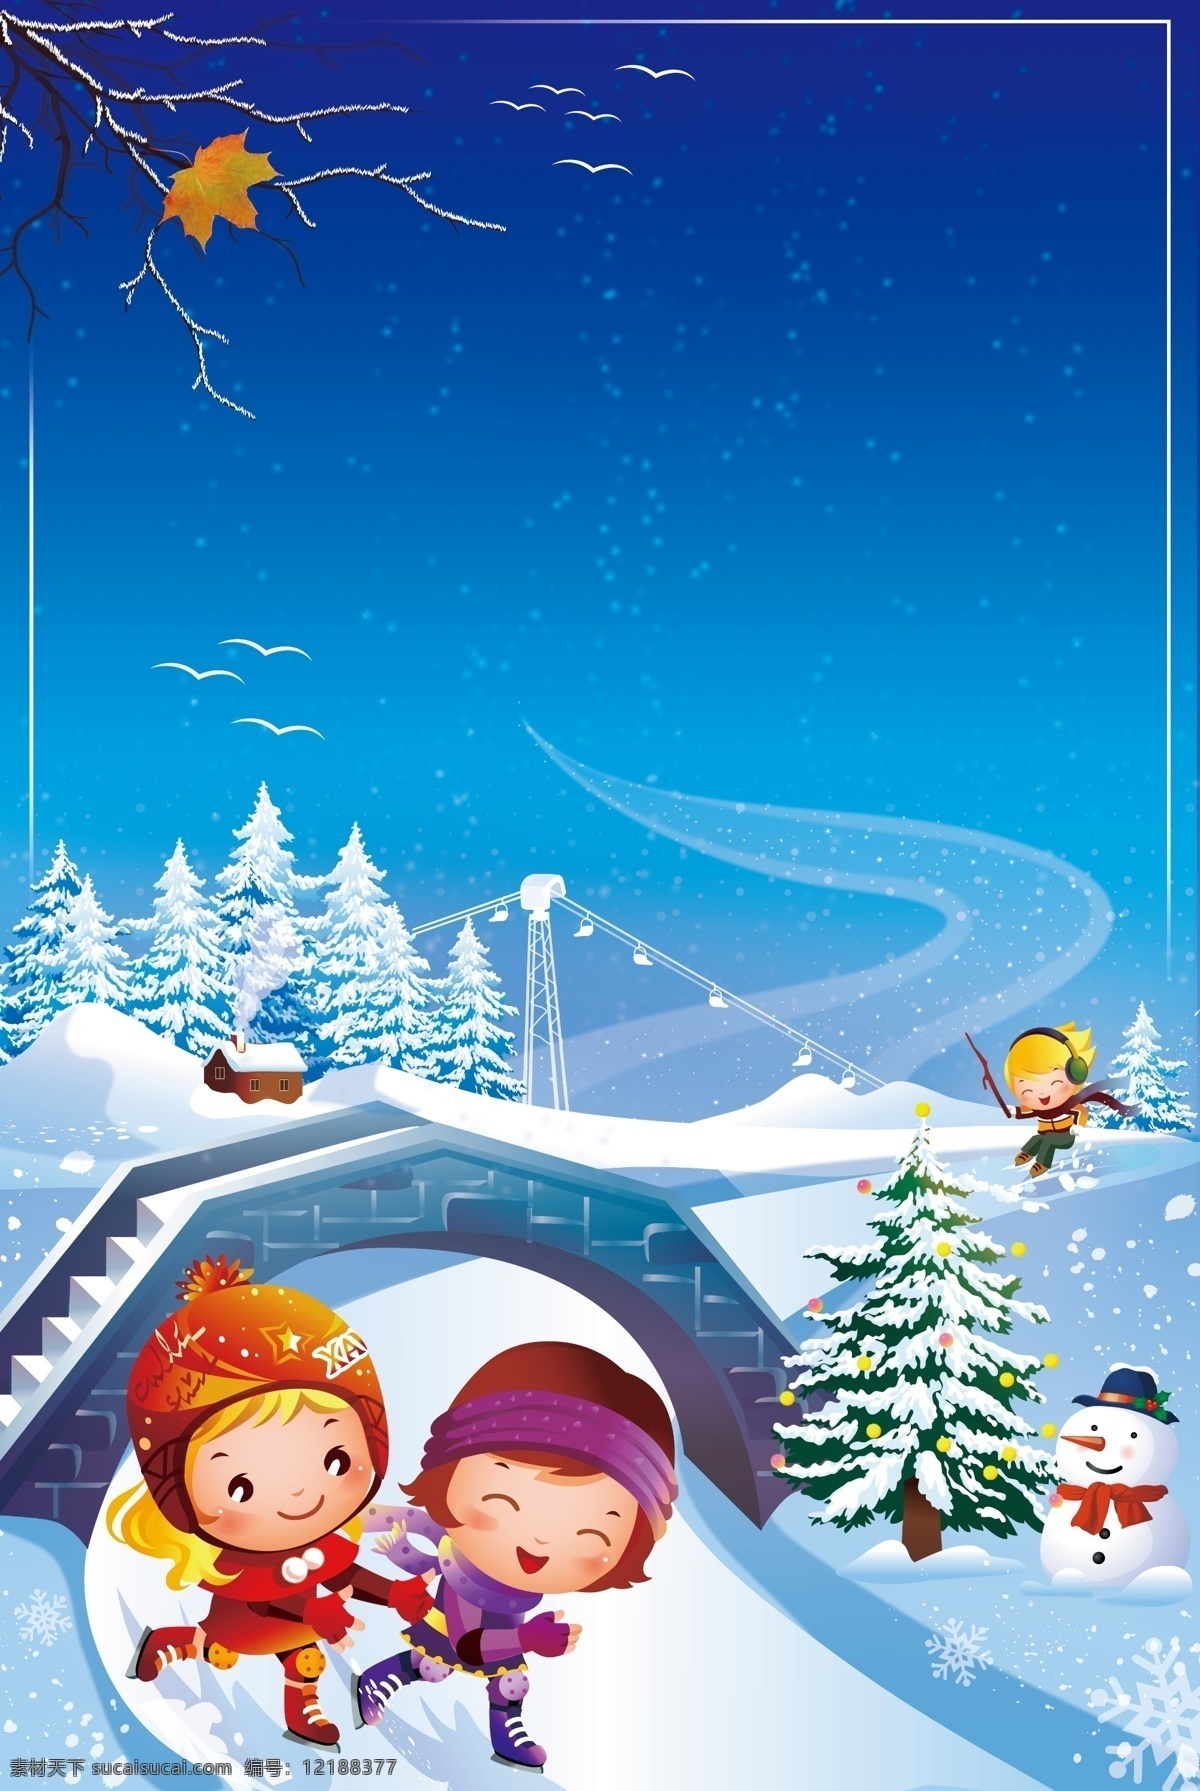 冬季 唯美 滑雪 场地 背景 枫叶 卡通 圣诞树 圣诞背景 打雪仗 雪人 圣诞节背景 飘雪 堆雪人